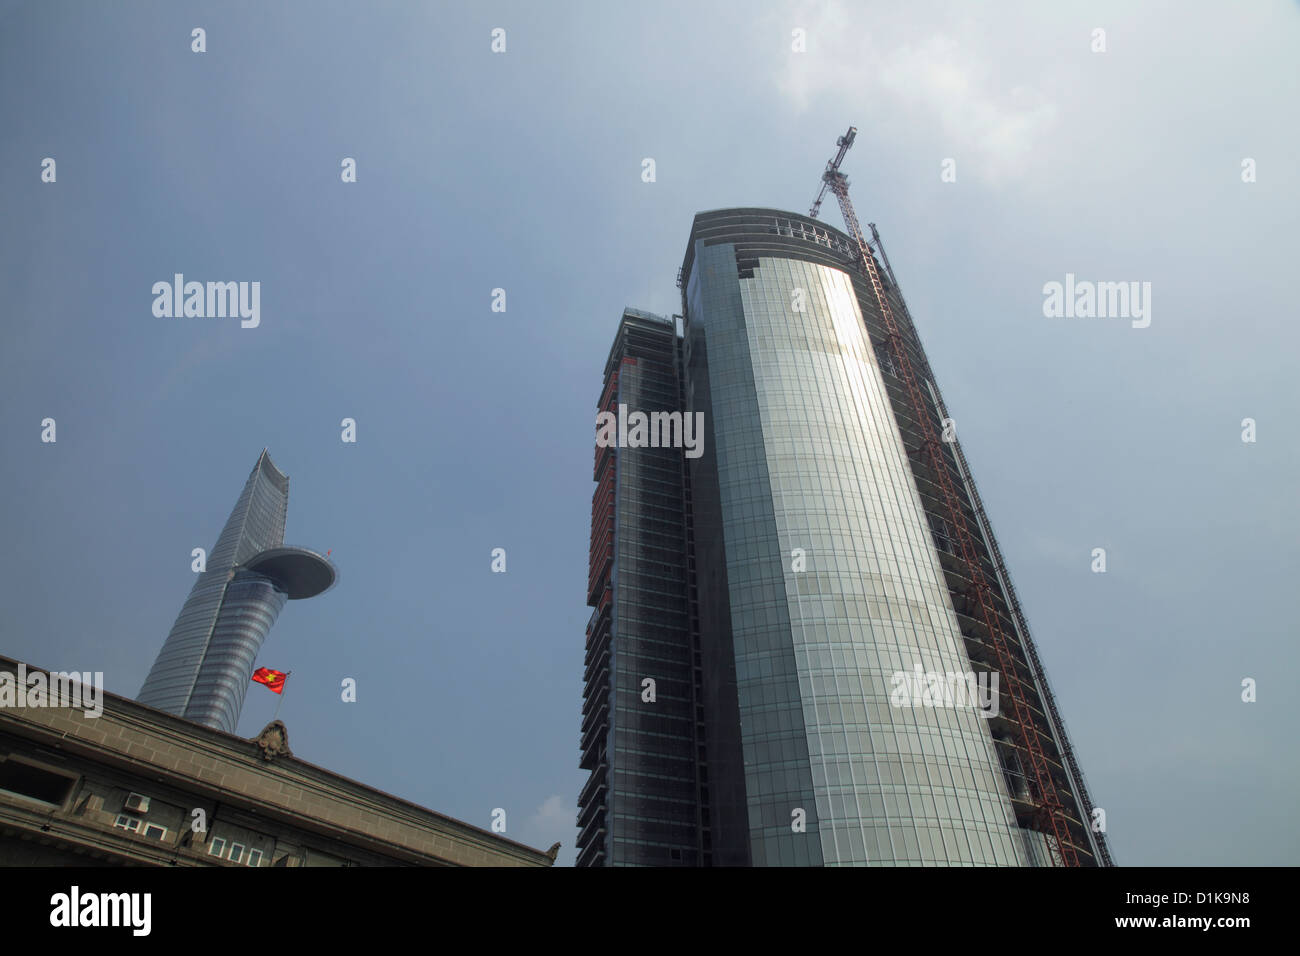 L'angle faible de ce gratte-ciel moderne en cours de construction et Bitexco Financial Tower en arrière-plan. Ho Chi Minh, Vietnam Banque D'Images